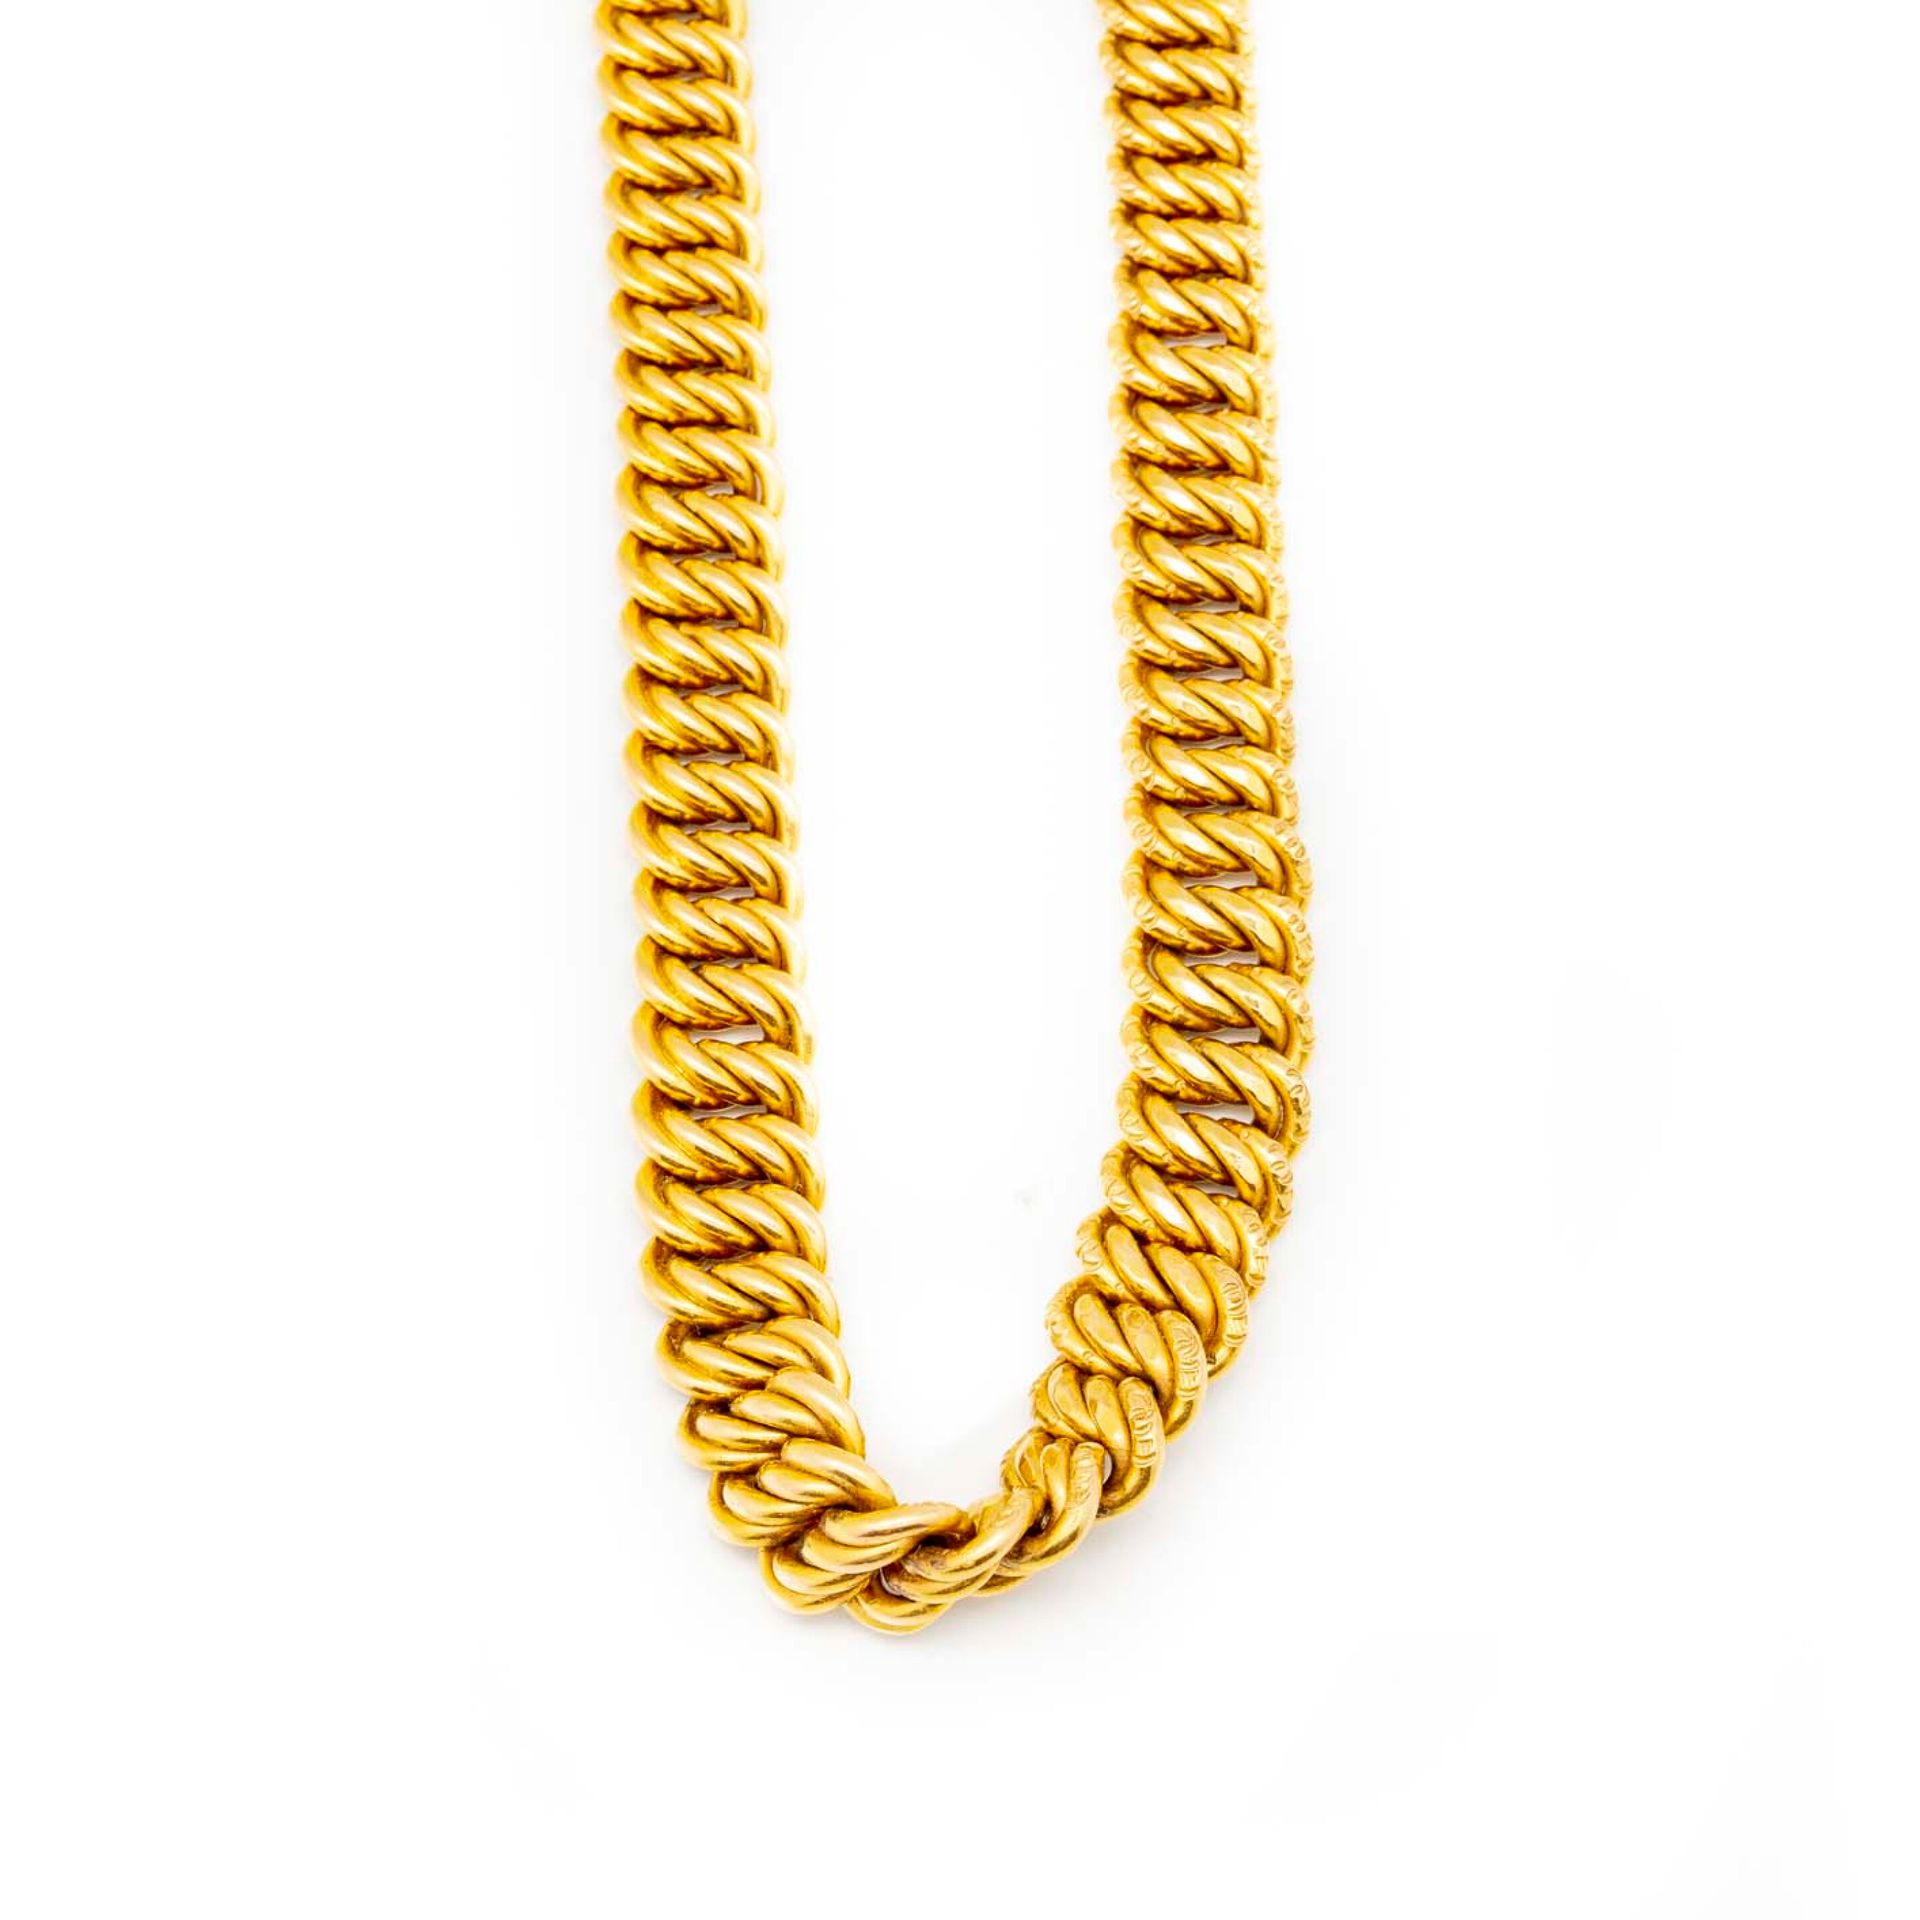 Null Halskette aus Gelbgold mit flexiblen Gliedern

Gewicht : 117 g.